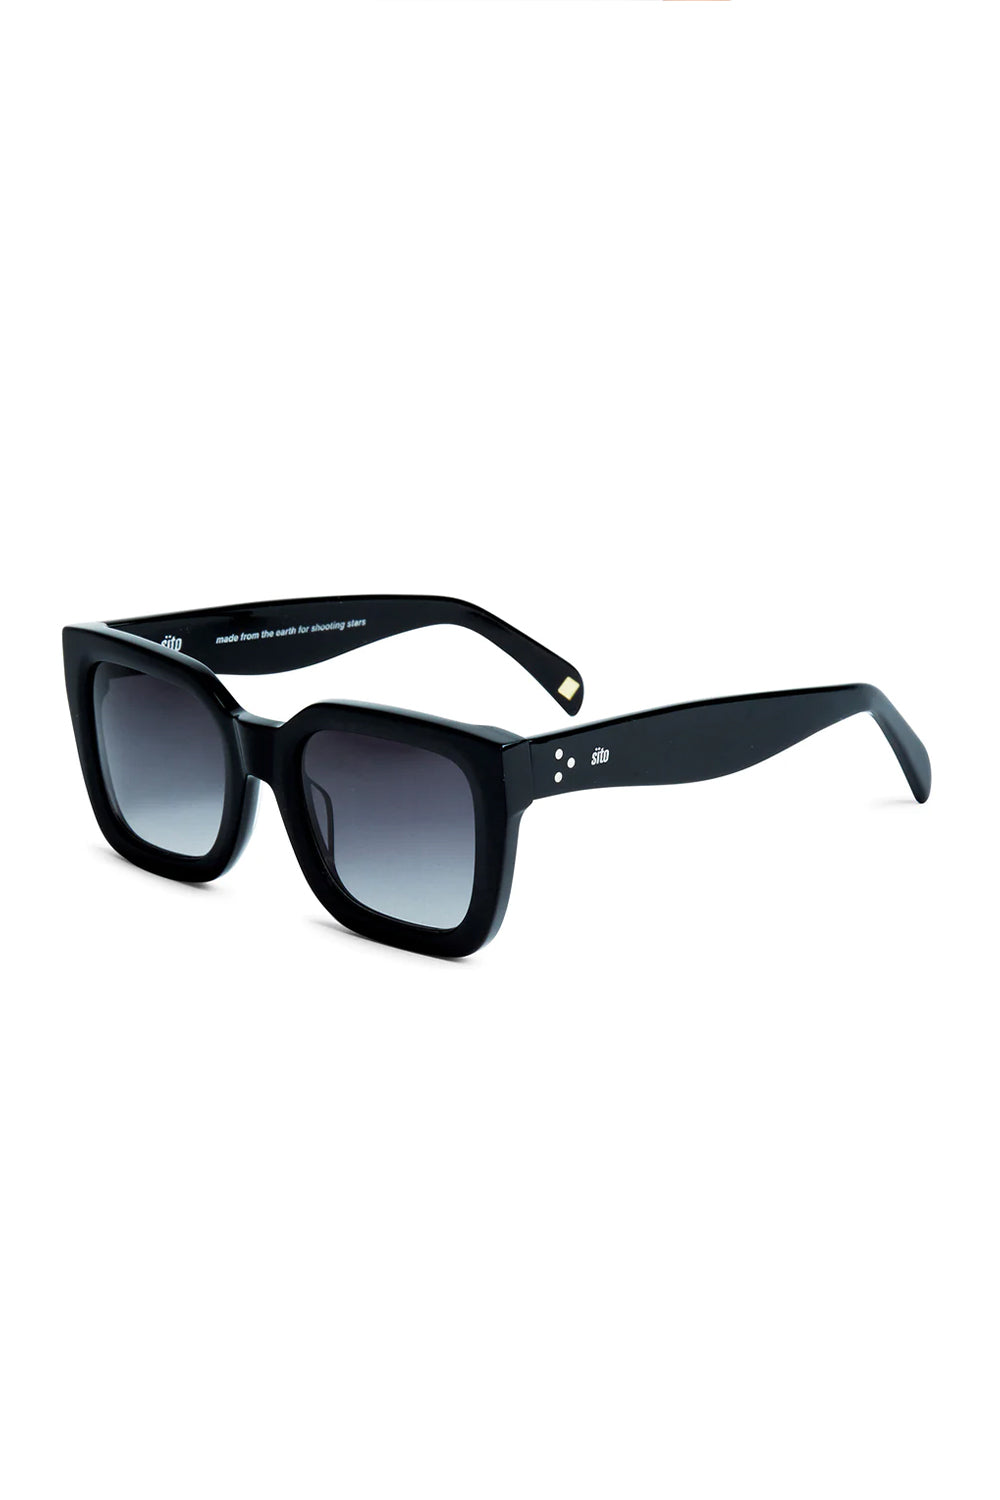 Sito Harlow Sunglasses